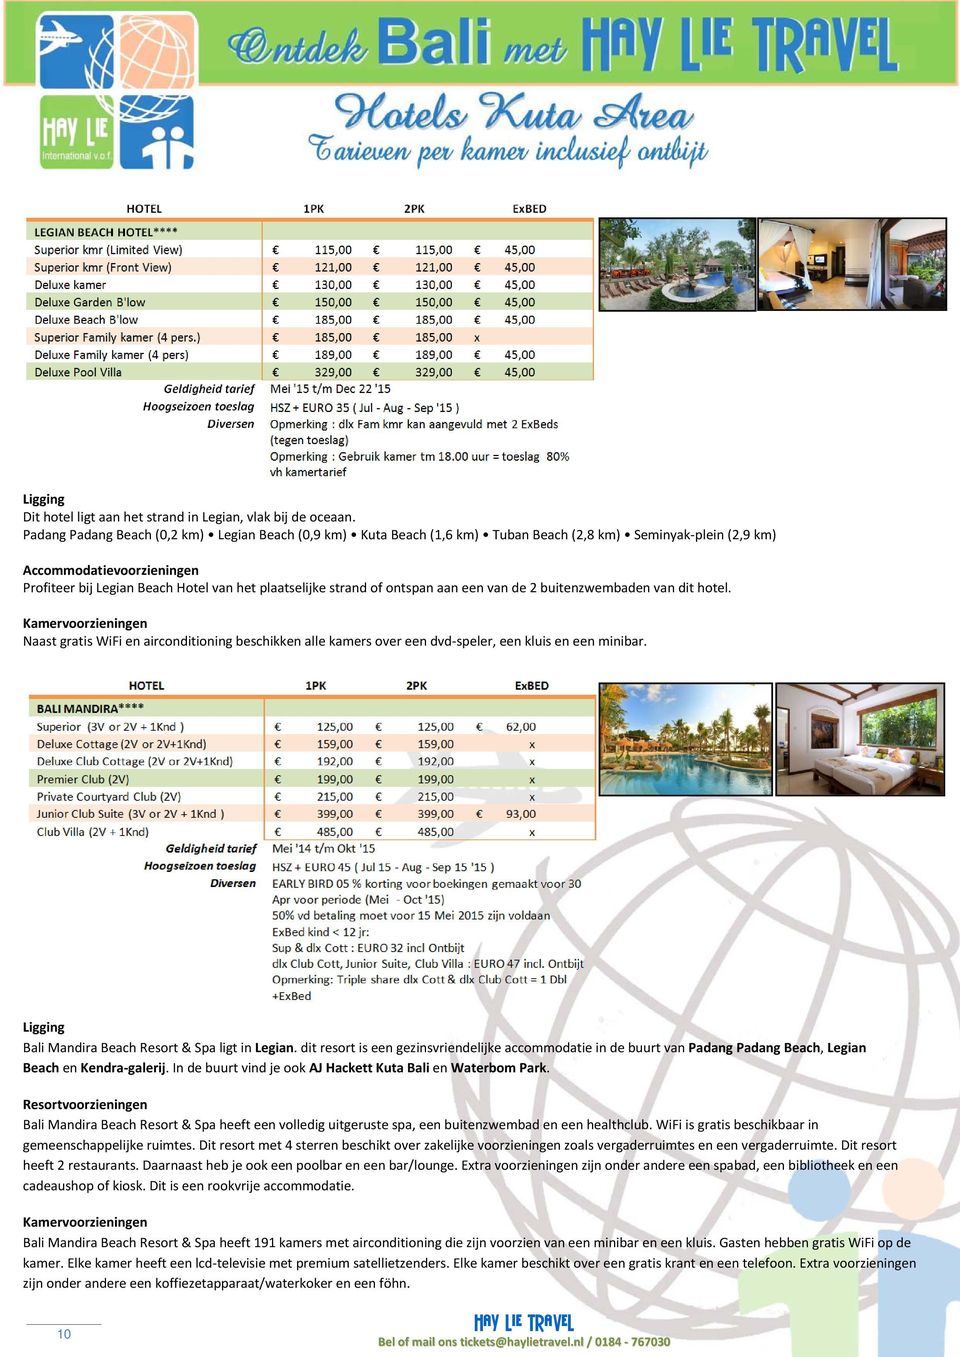 de 2 buitenzwembaden van dit hotel. Naast gratis WiFi en airconditioning beschikken alle kamers over een dvd-speler, een kluis en een minibar. Bali Mandira Beach Resort & Spa ligt in Legian.